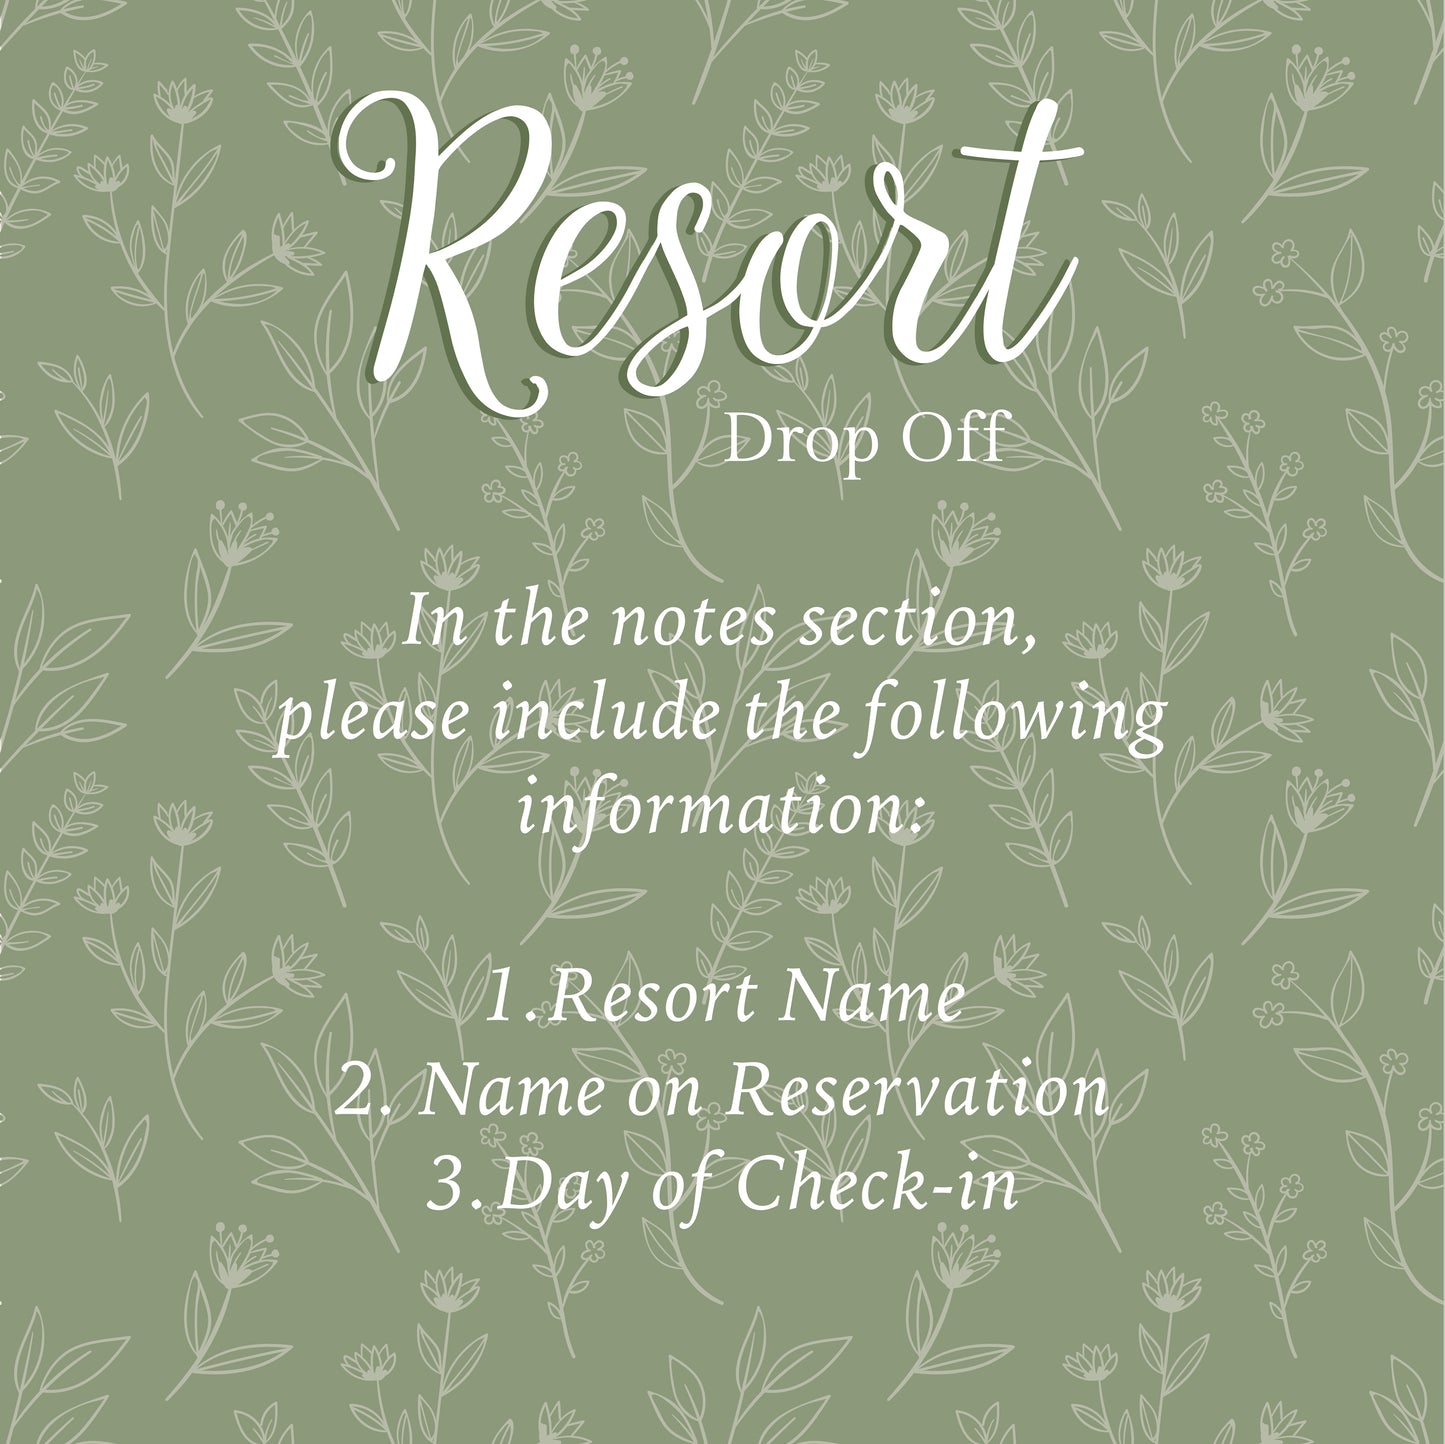 Resort Drop-Off